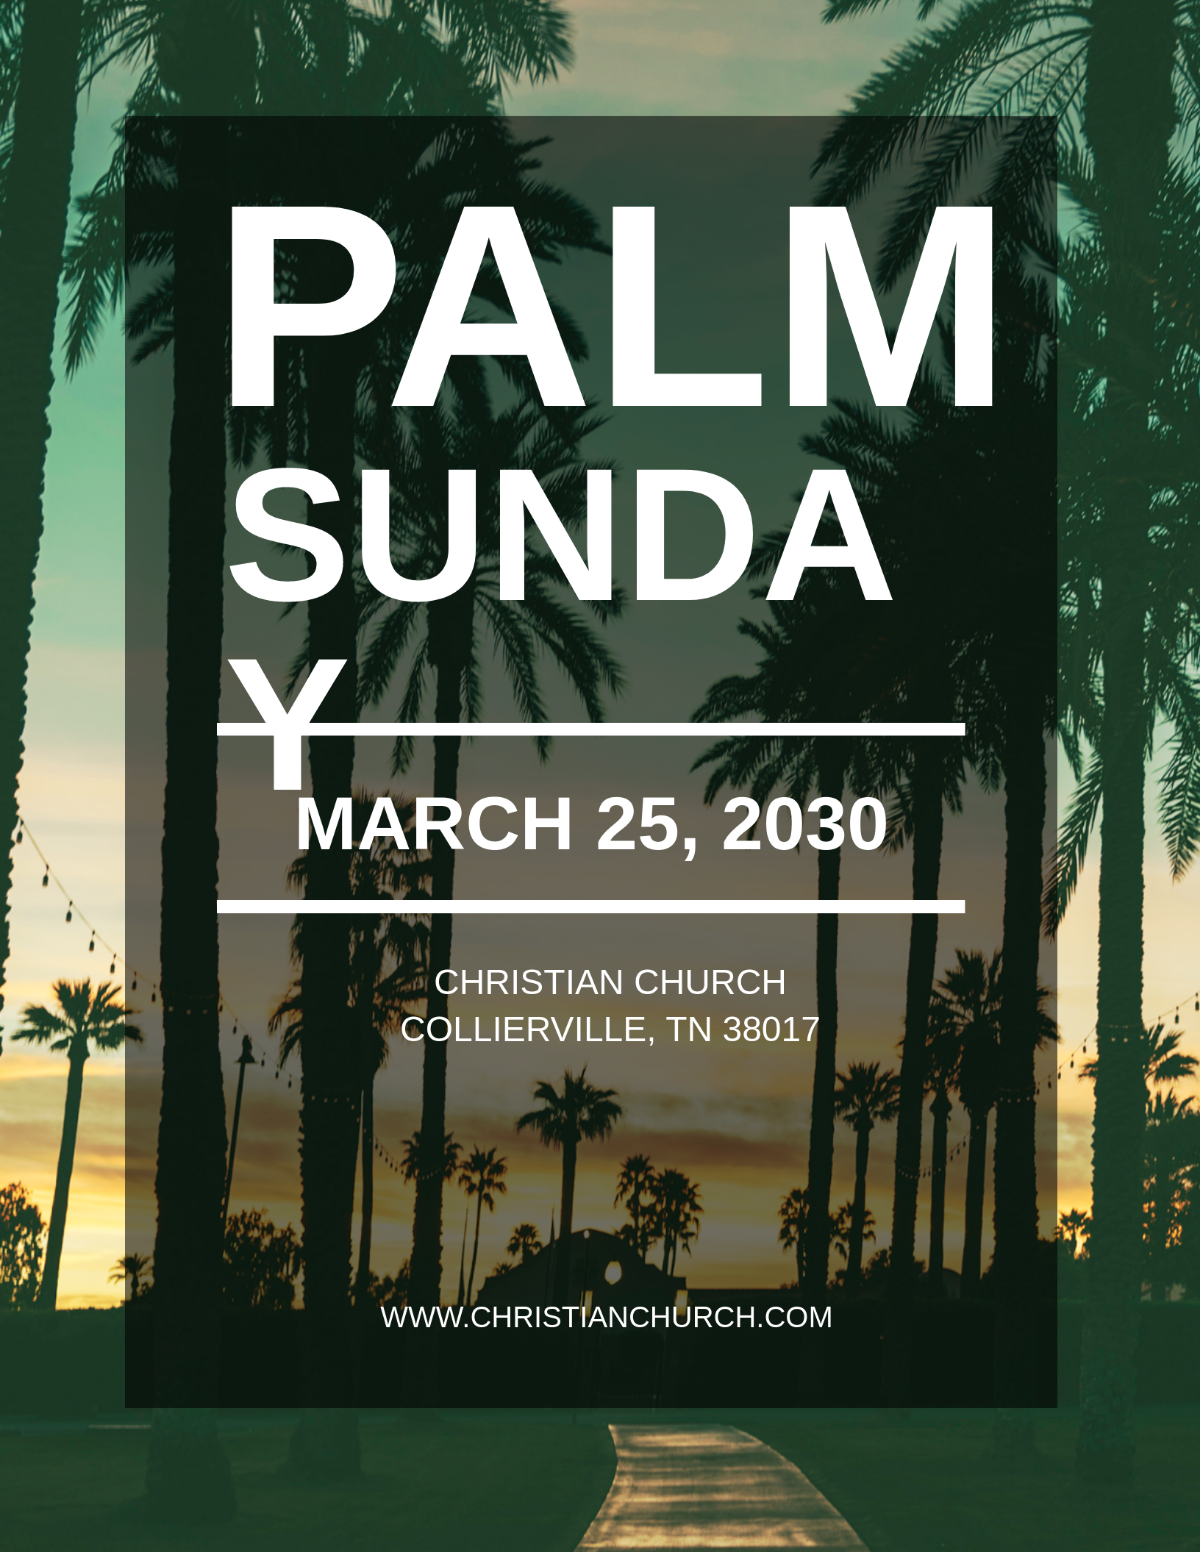 Palm Sunday Flyer Template